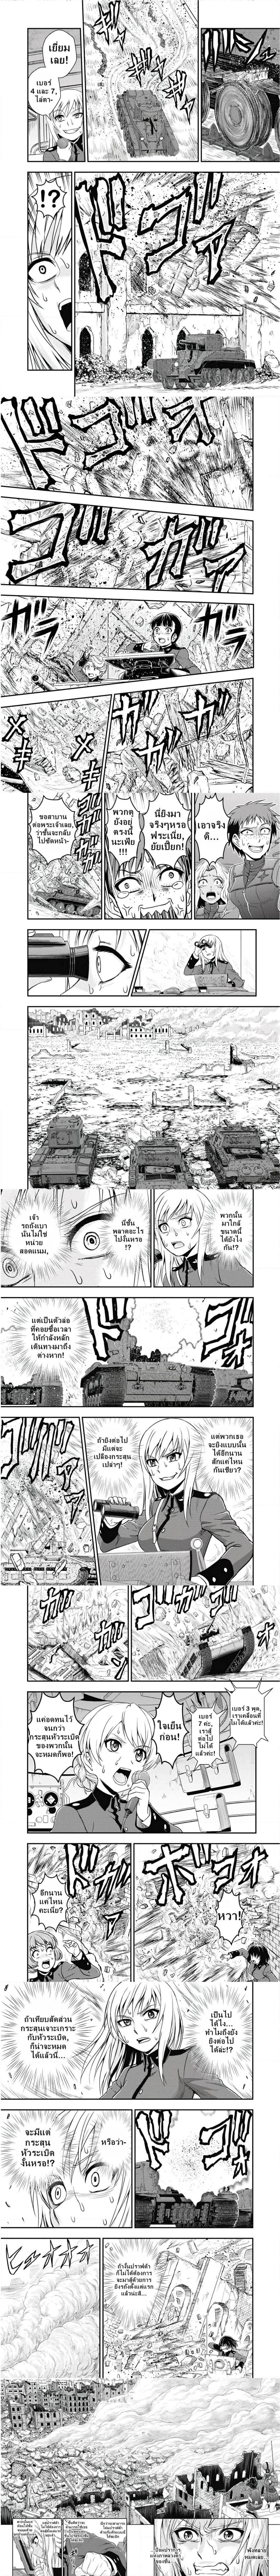 Girls und Panzer – Saga of Pravda 19 (3)